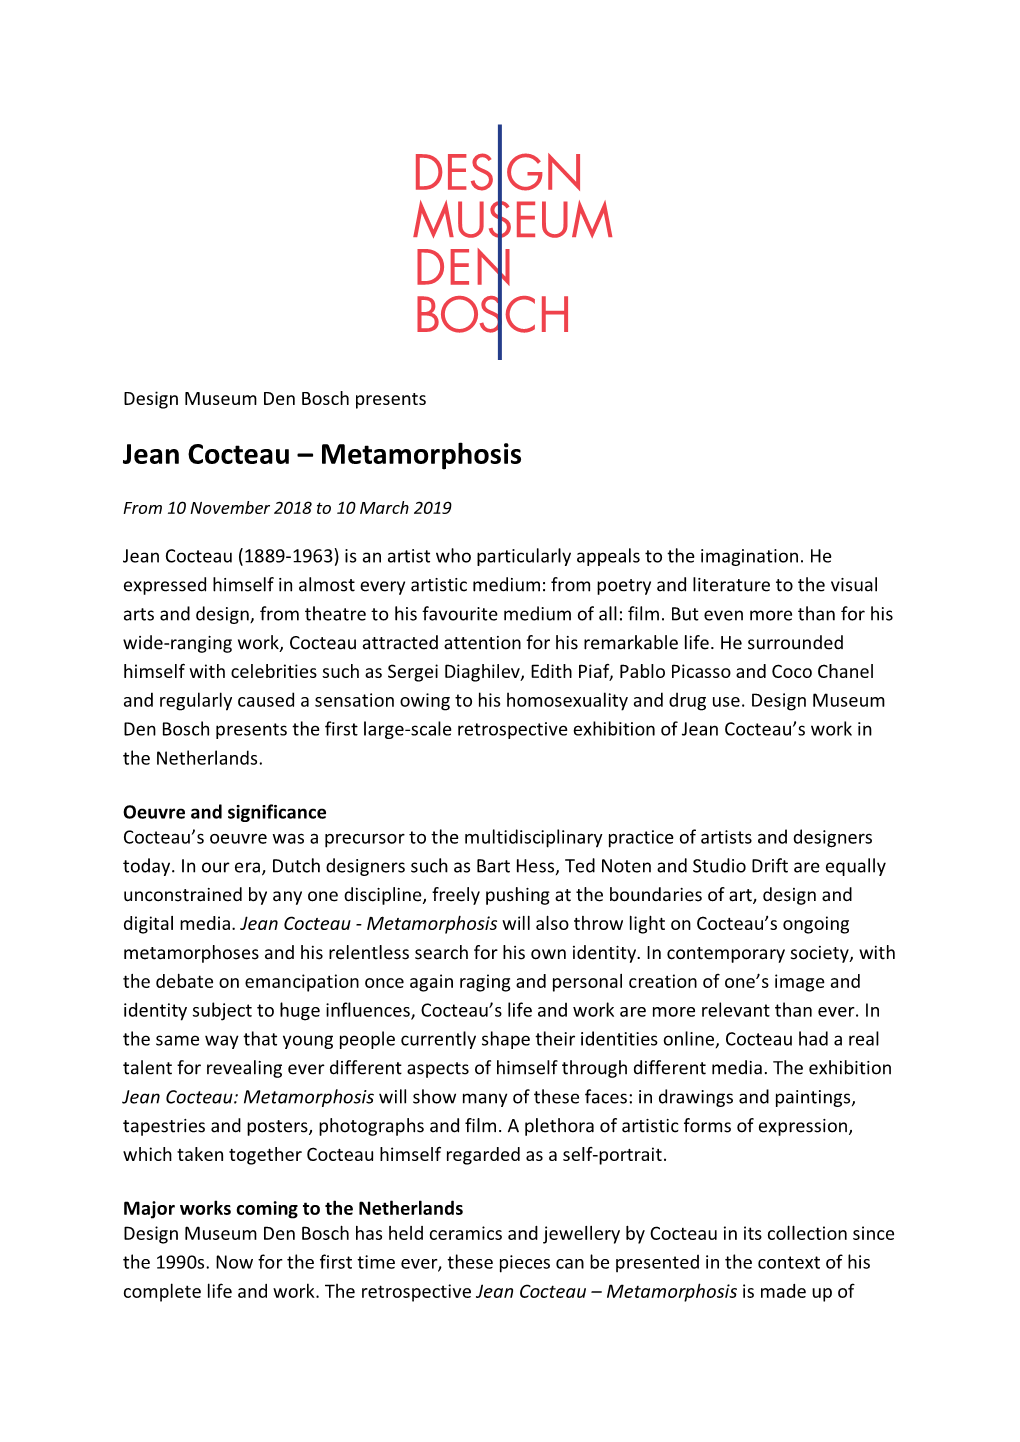 Jean Cocteau – Metamorphosis